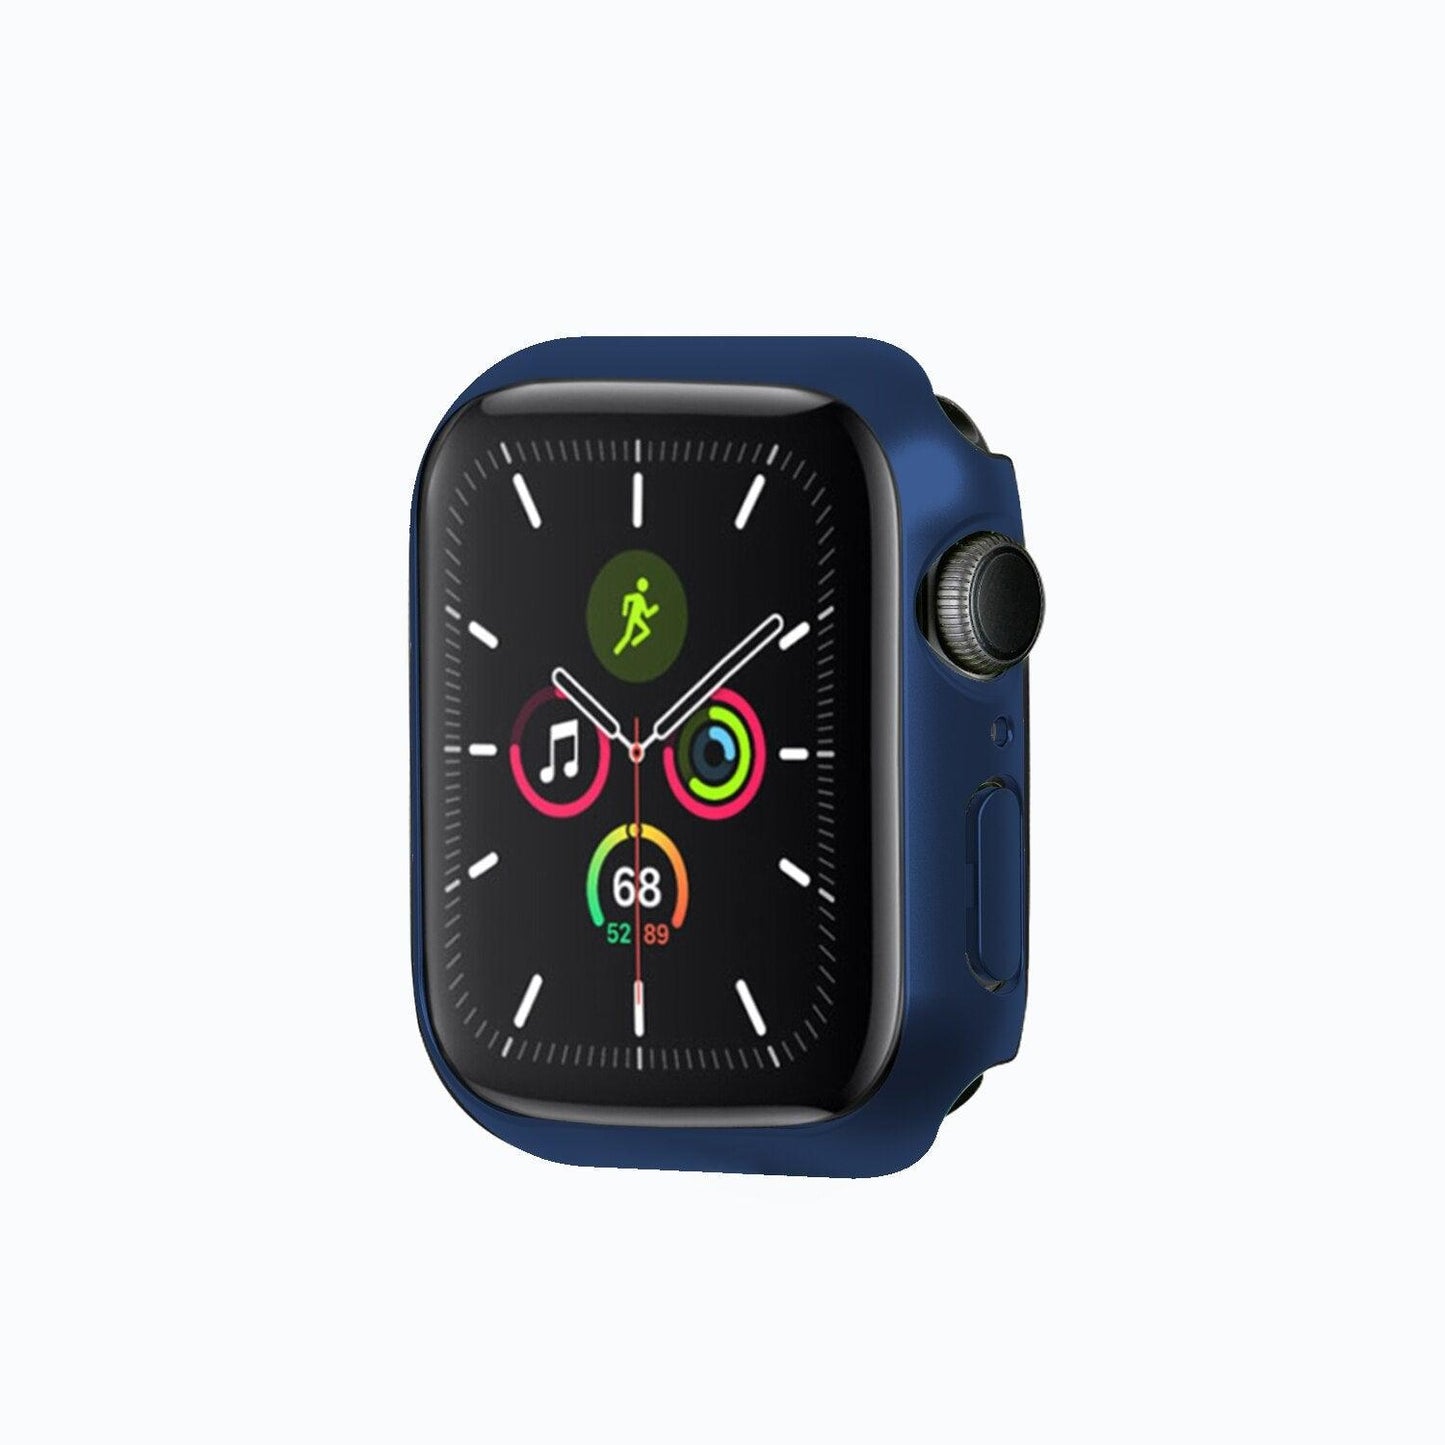 Apple Watch Accessory, Apple watch case, Apple watch Cover, Apple watch glass, APPLE WATCH SERIES 7 CASE Apple Watch Screensaver Case